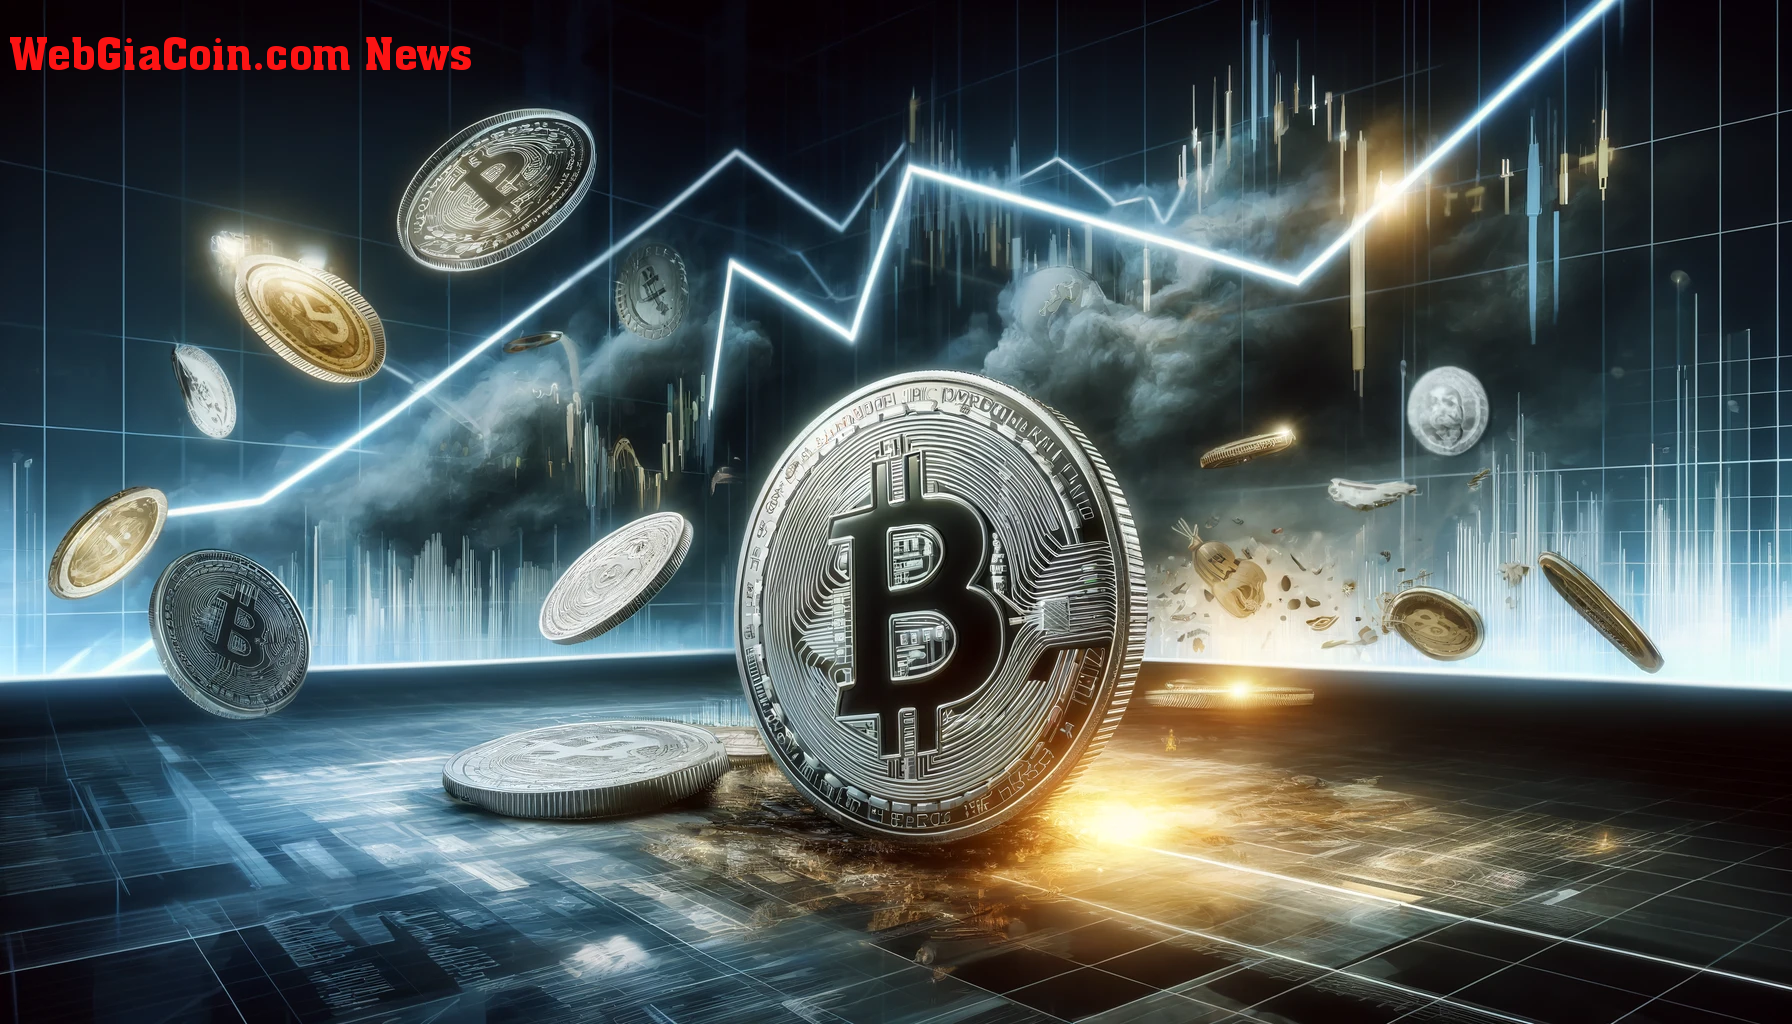 Giá bitcoin giảm xuống dưới 66.000 USD: 4 lý do chính